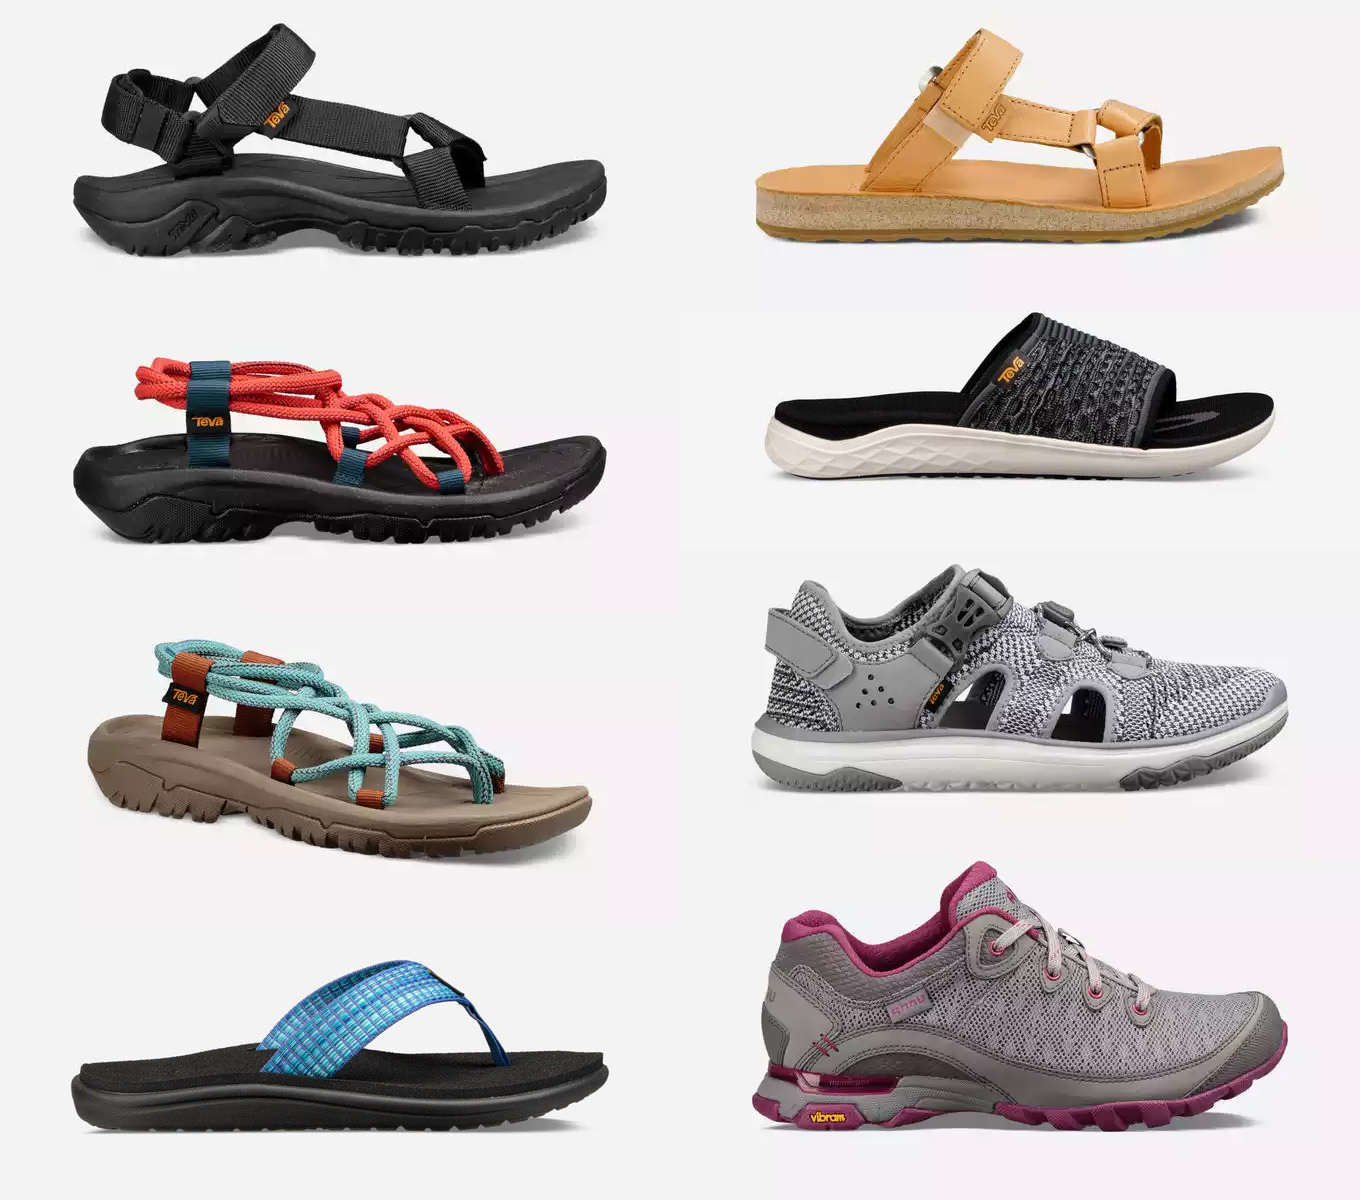 Teva Shoes & Sandals – Soft Shoe